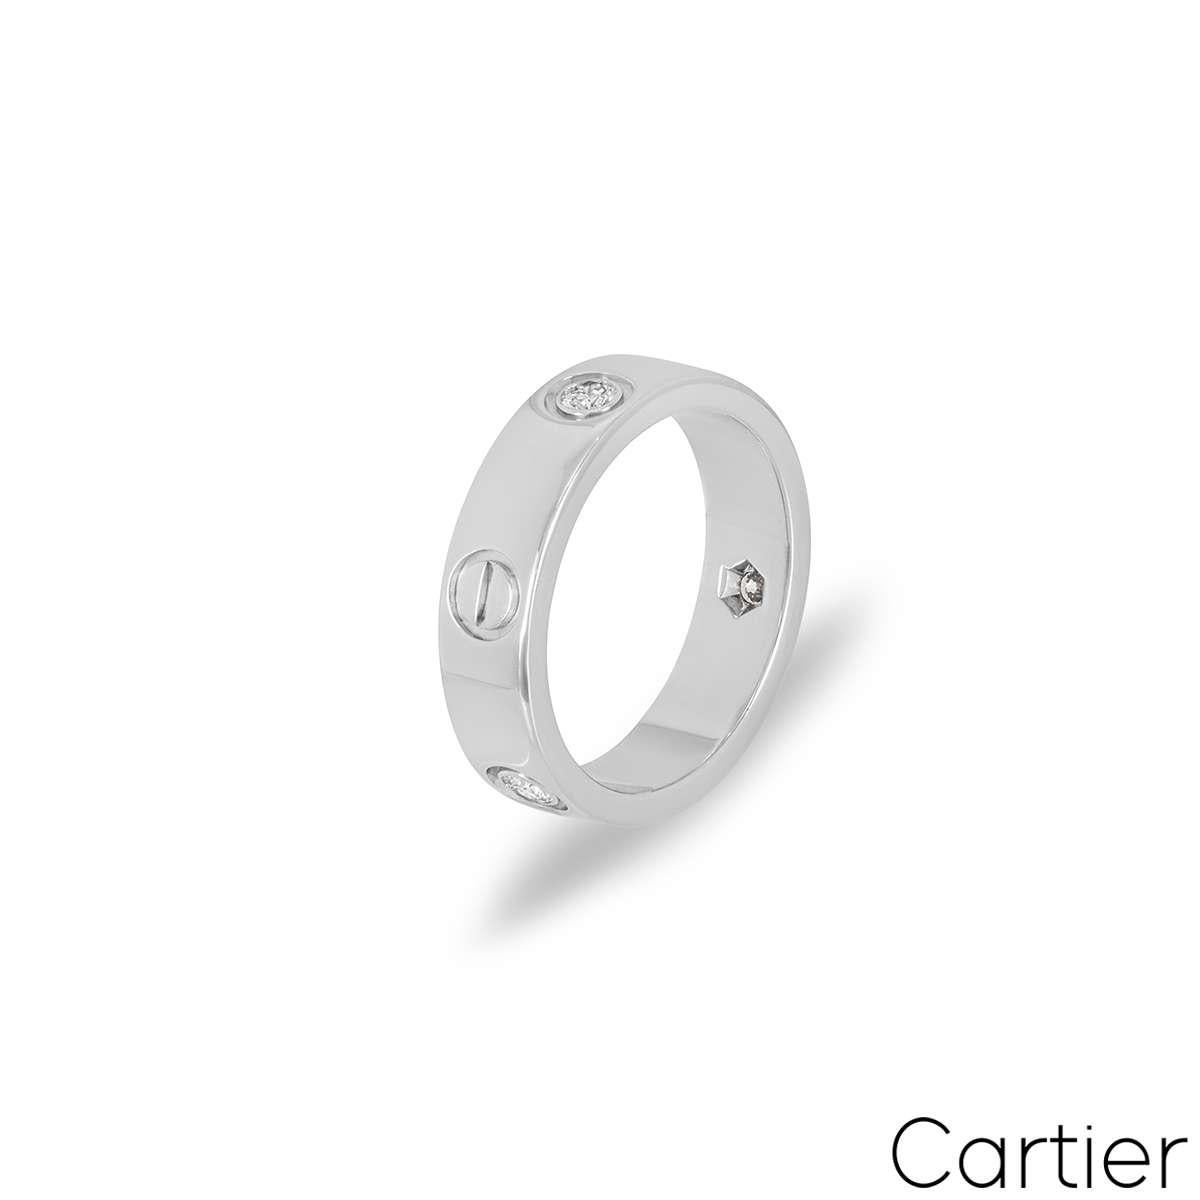 Ein Ring aus 18 Karat Weißgold aus der Collection'S Love von Cartier. Der Ring ist mit 3 runden Diamanten im Brillantschliff von insgesamt 0,22 ct besetzt, die sich zwischen den ikonischen Schraubenmotiven abwechseln. Der Ring ist 5,5 mm breit, hat